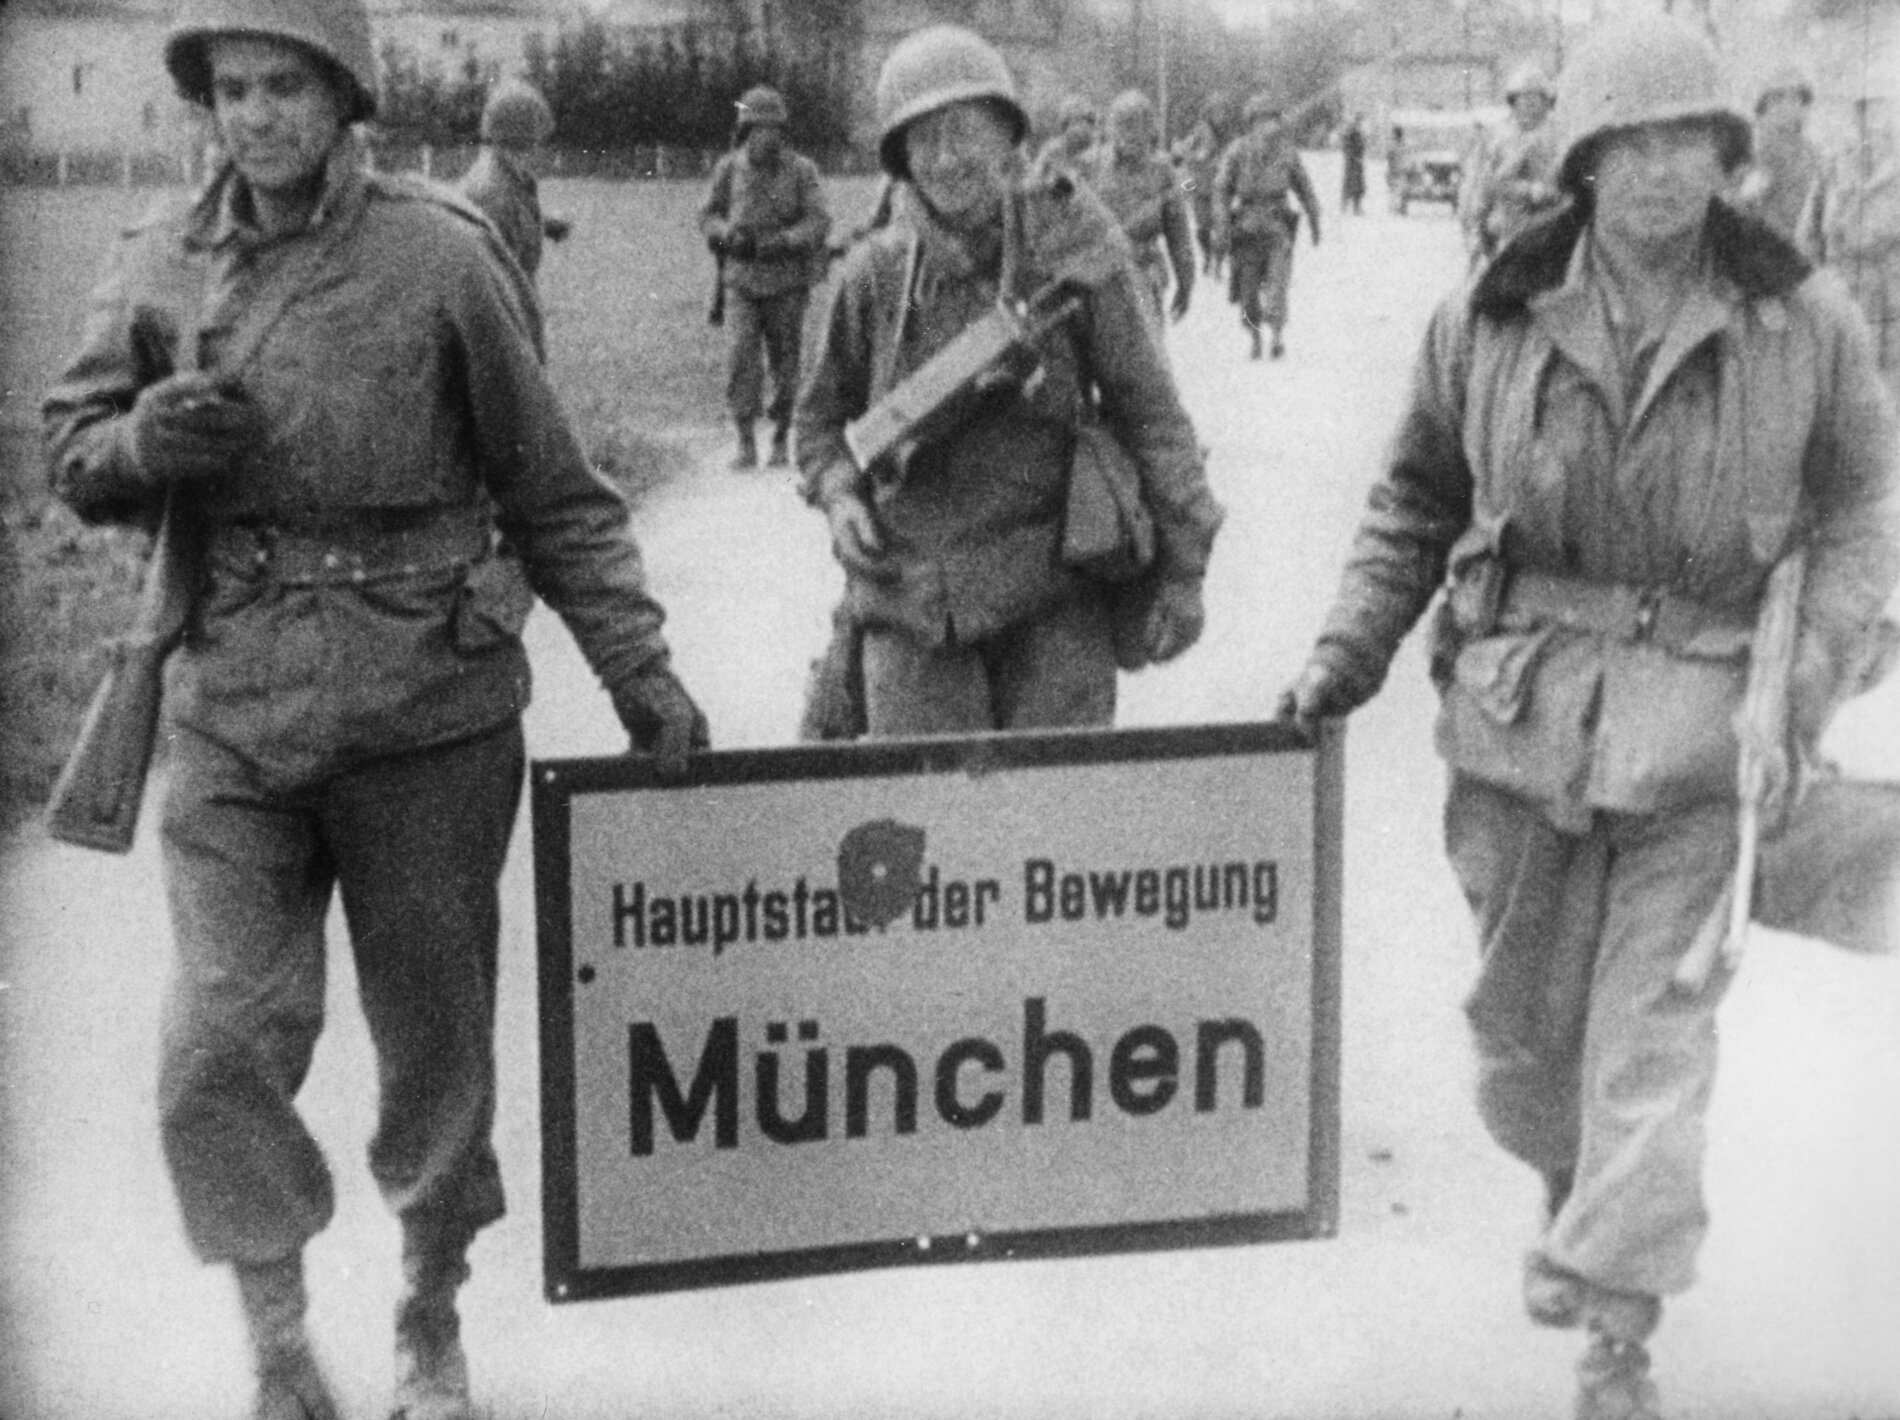 Drei bewaffnete amerikanische Soldaten tragen ein Ortsschild mit der Aufschrift „Hauptstadt der Bewegung München“ und einem Einschussloch.